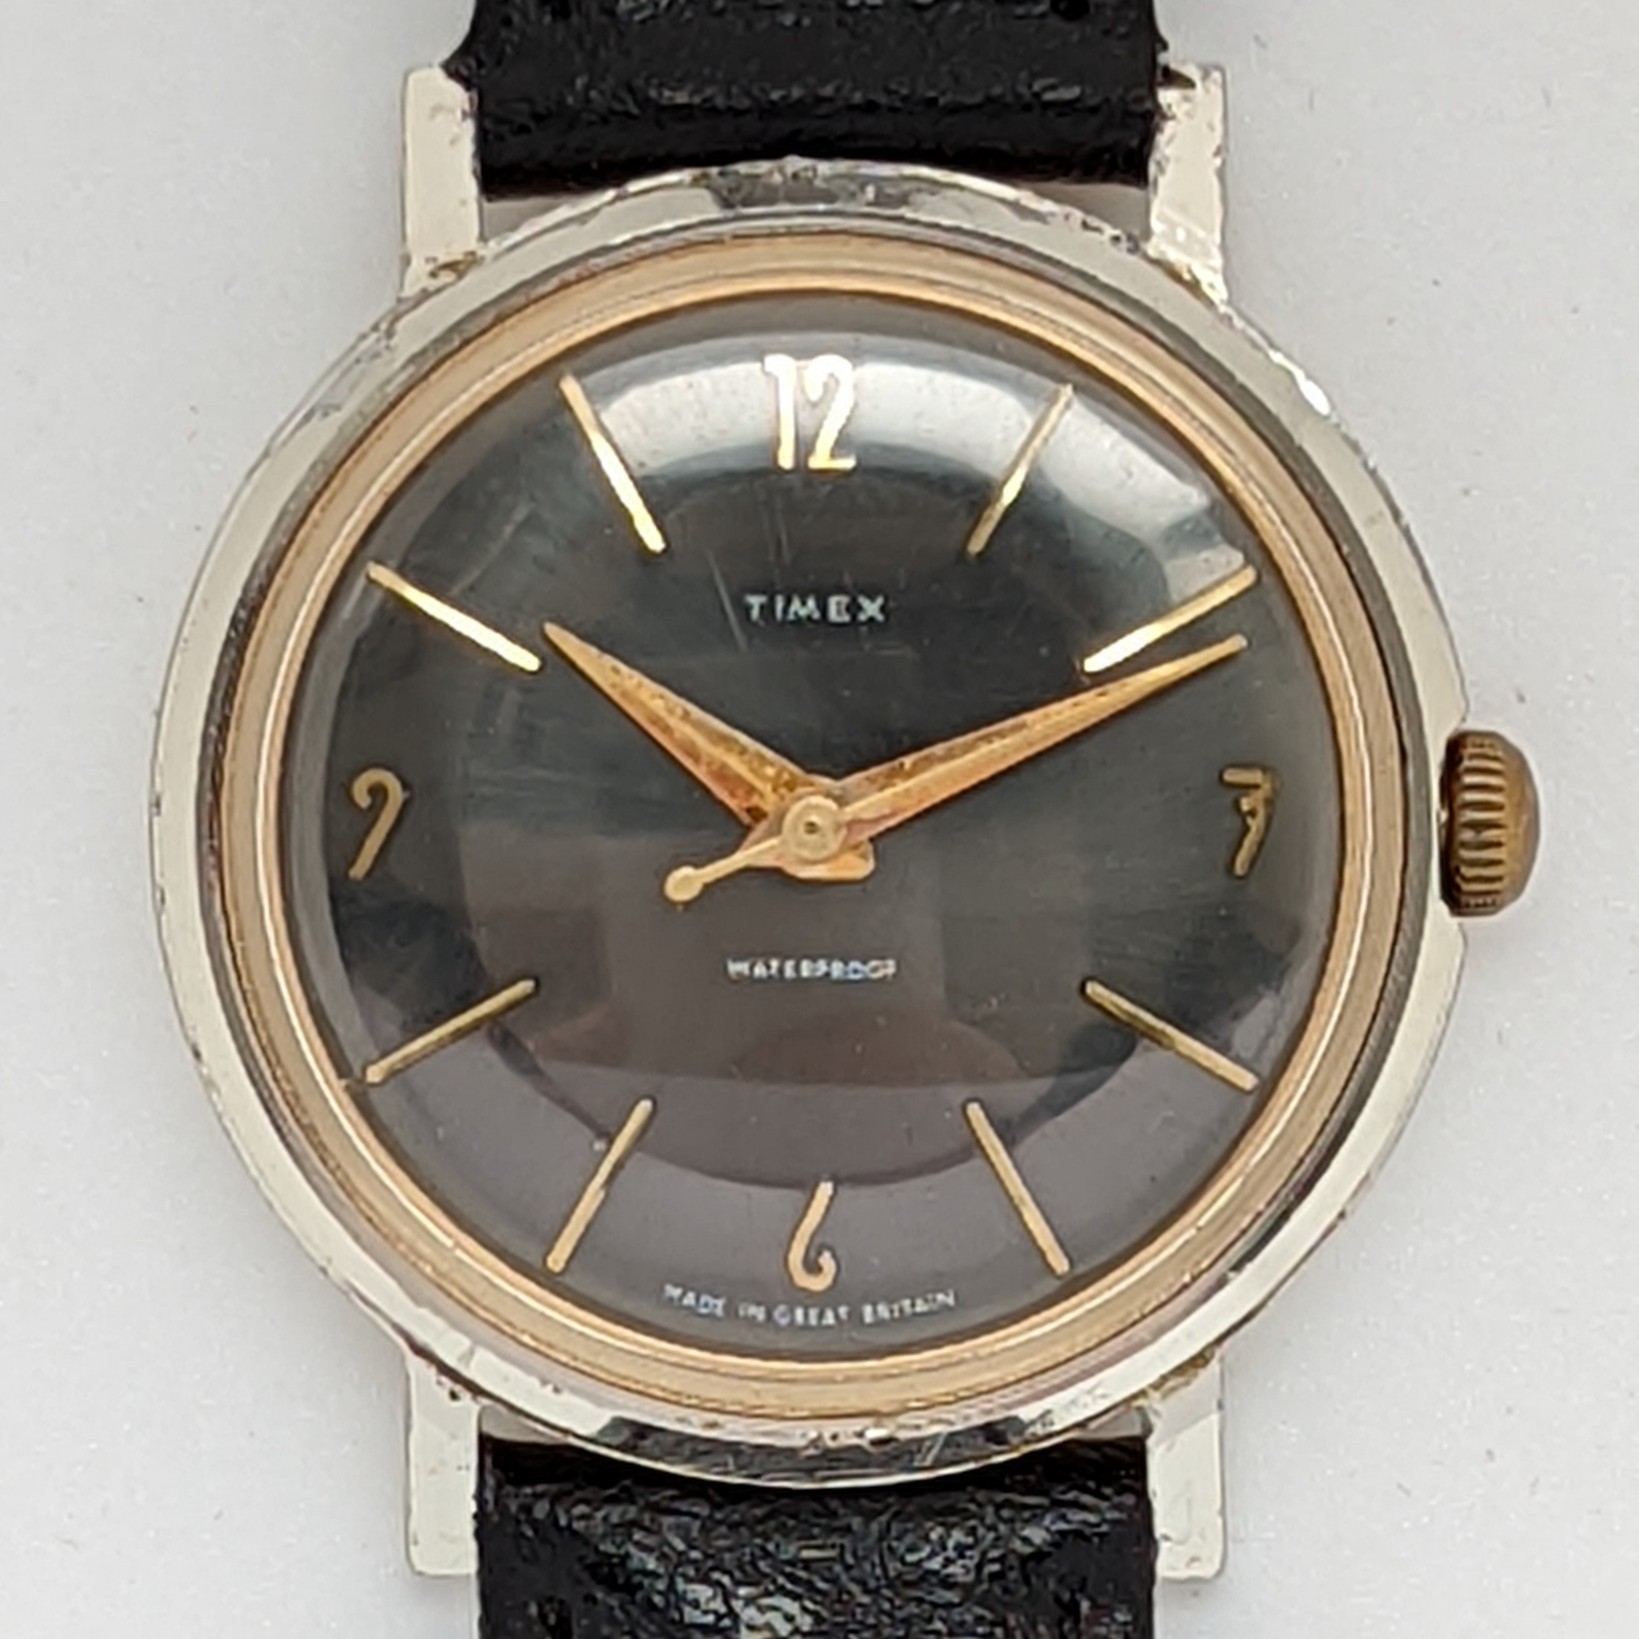 Timex Marlin 2017 2260 [1960]